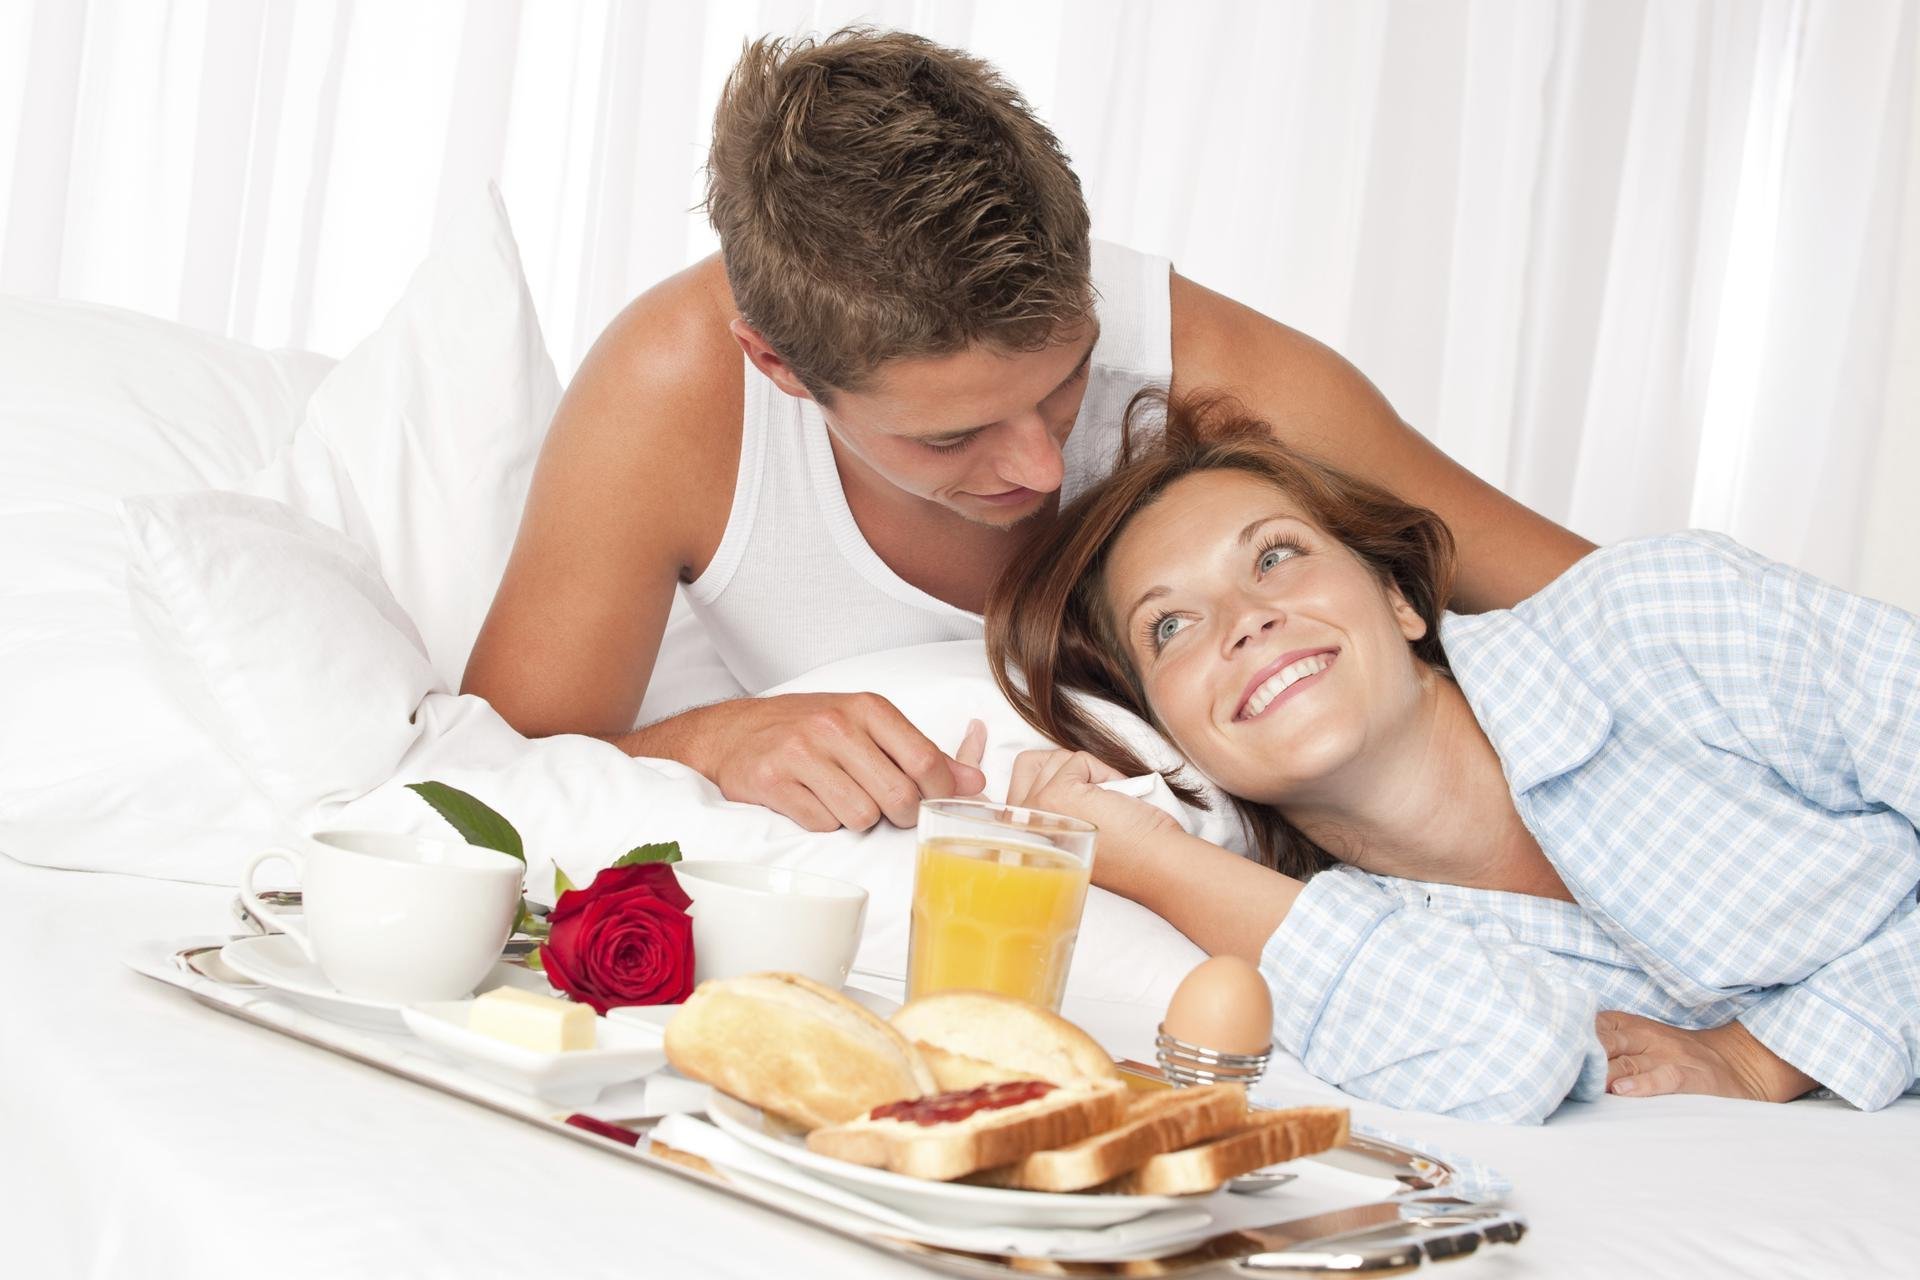 Принести завтрак в постель. Завтрак в постель. Завтрак в постель для любимой. Завтрак в постель мужчине. Романтический завтрак в постель.